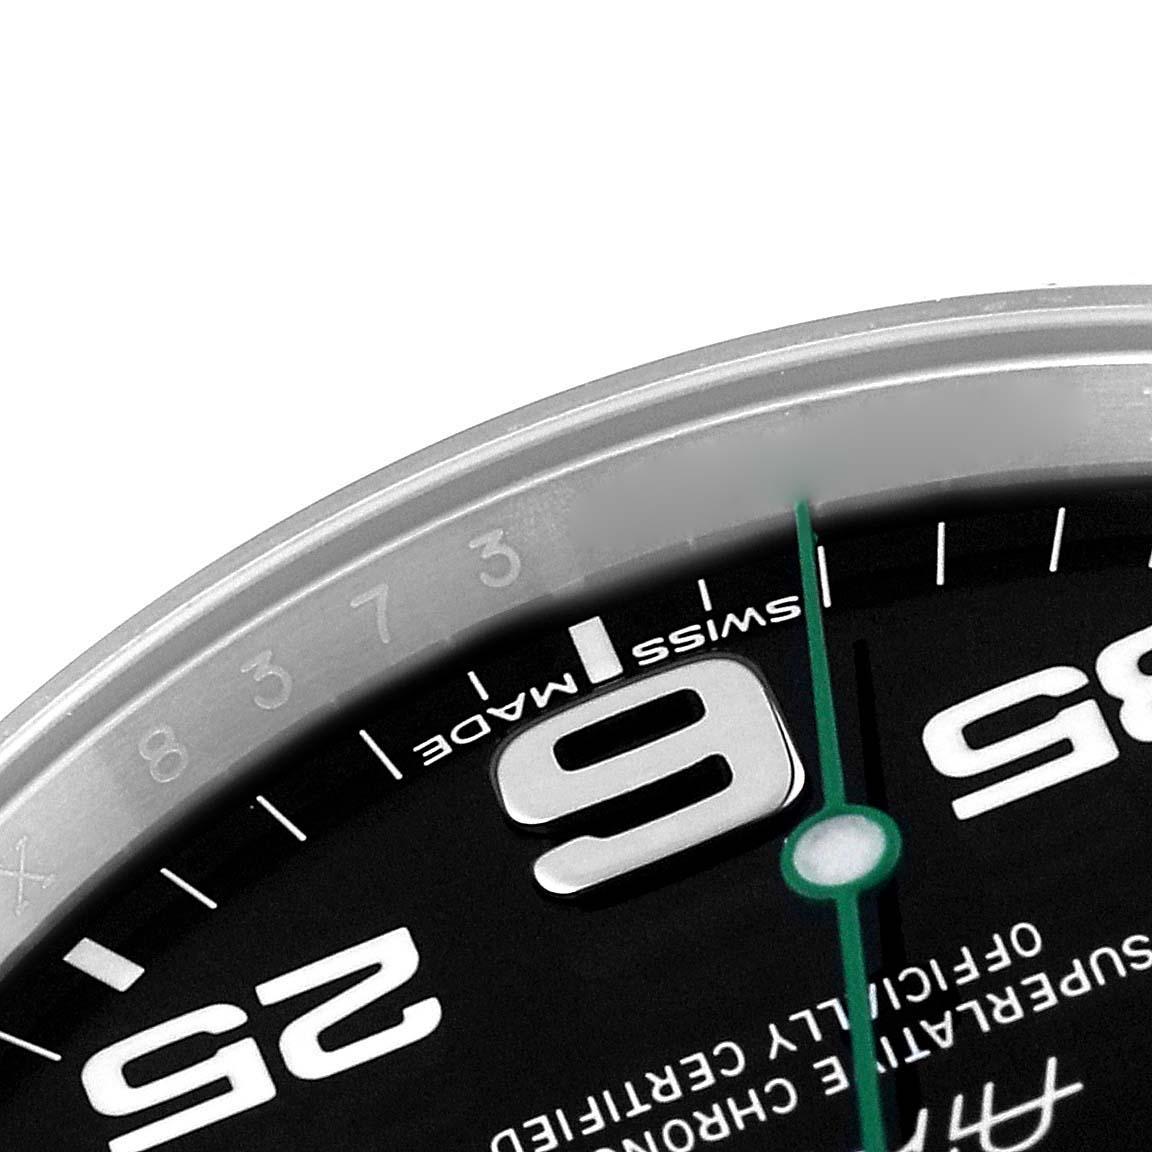 Rolex Oyster Perpetual Air King Green Hand Steel Mens Watch 116900 Box Card. Mouvement automatique à remontage automatique, officiellement certifié chronomètre. Boîtier en acier inoxydable de 40.0 mm de diamètre. Logo Rolex sur la couronne. Lunette